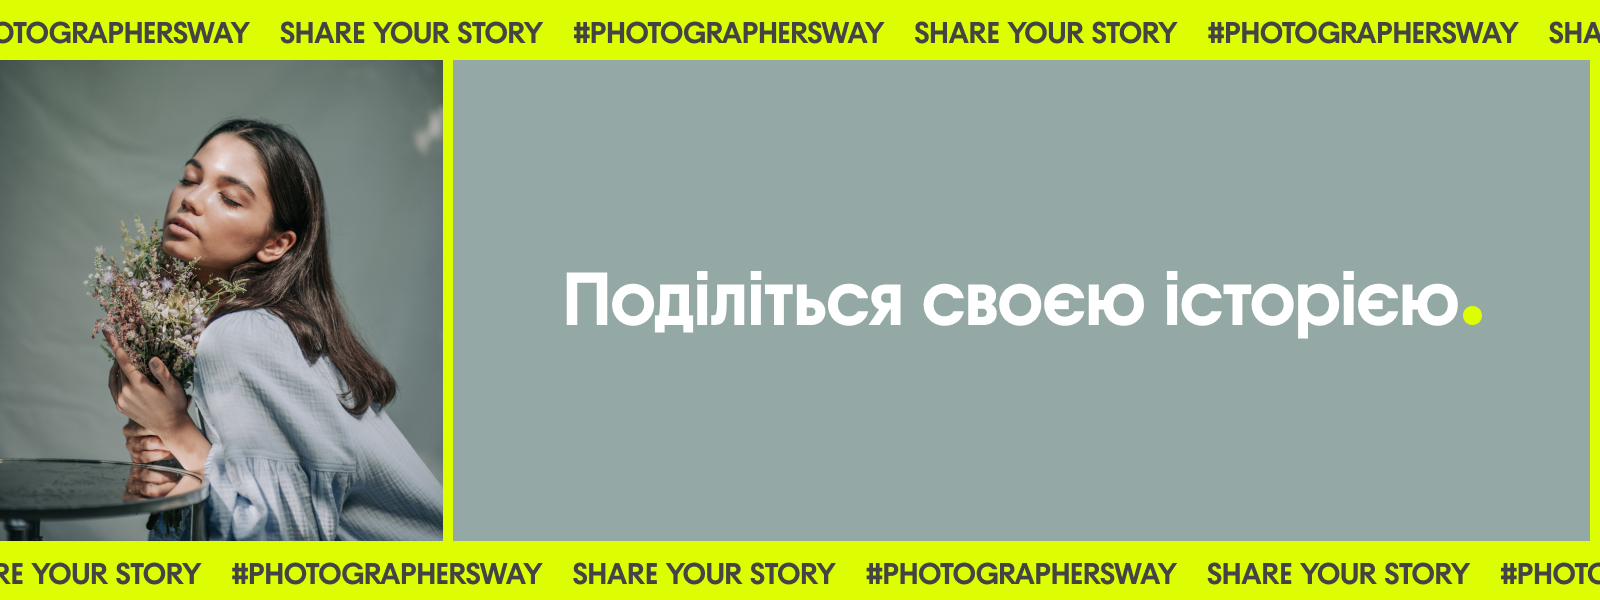 Станьте учасником нового проєкту для фотографів: поділіться своєю історією з Depositphotos